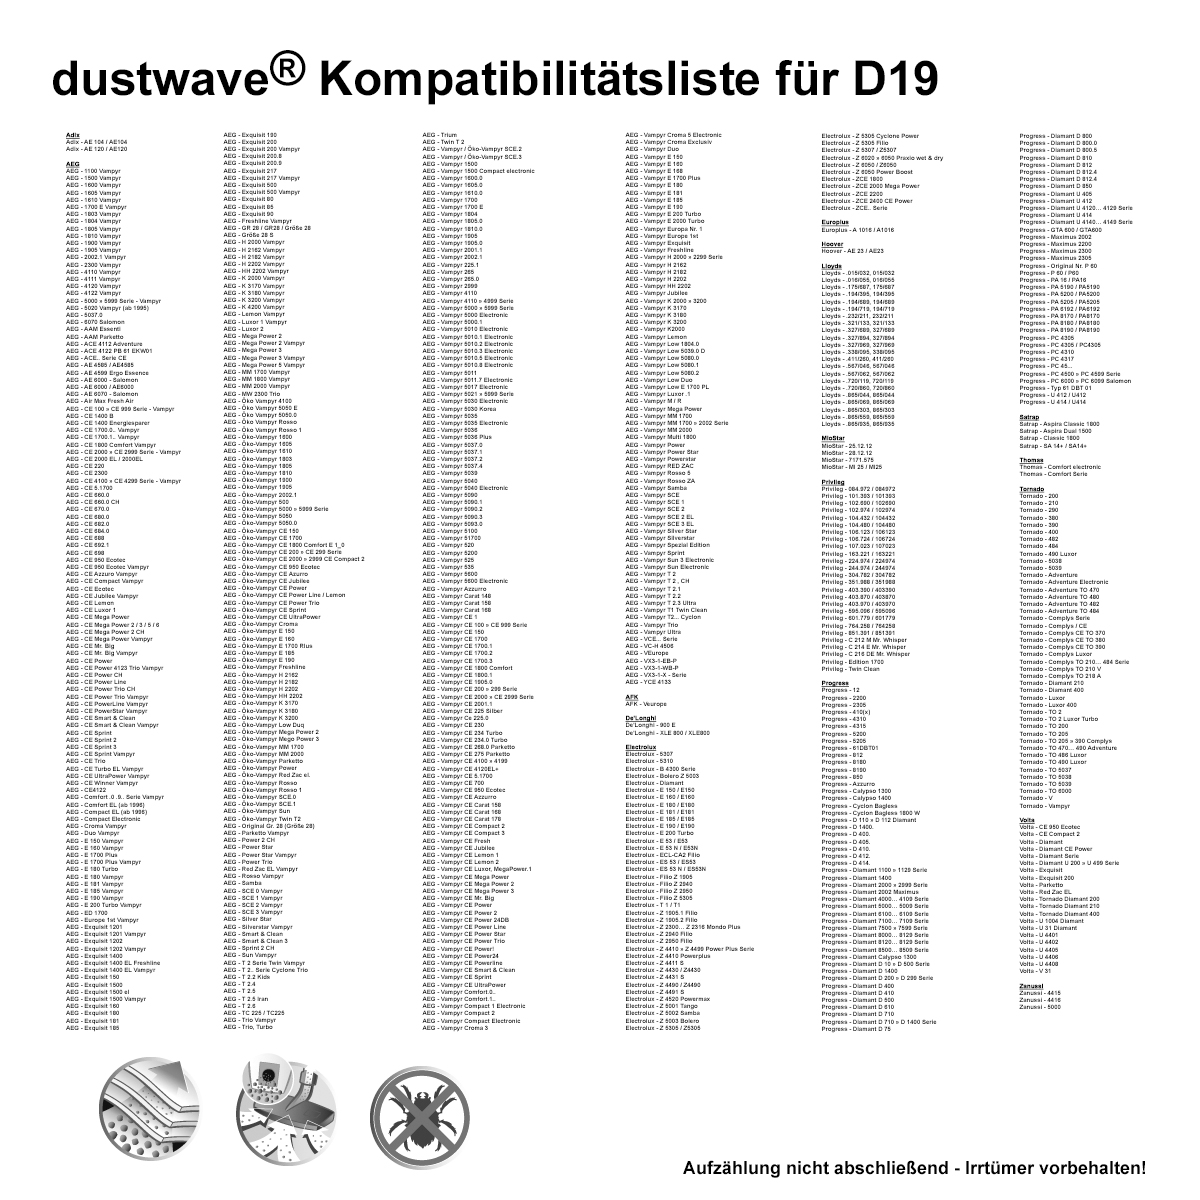 Dustwave® 10 Staubsaugerbeutel für AEG Ergo Essence AE 2000 Trio, AE 4200, AE 4550, AE 4560, AE 4570, AE 4575, AE 4580, AE 4590, AE 4594 - hocheffizient mit Hygieneverschluss - Made in Germany